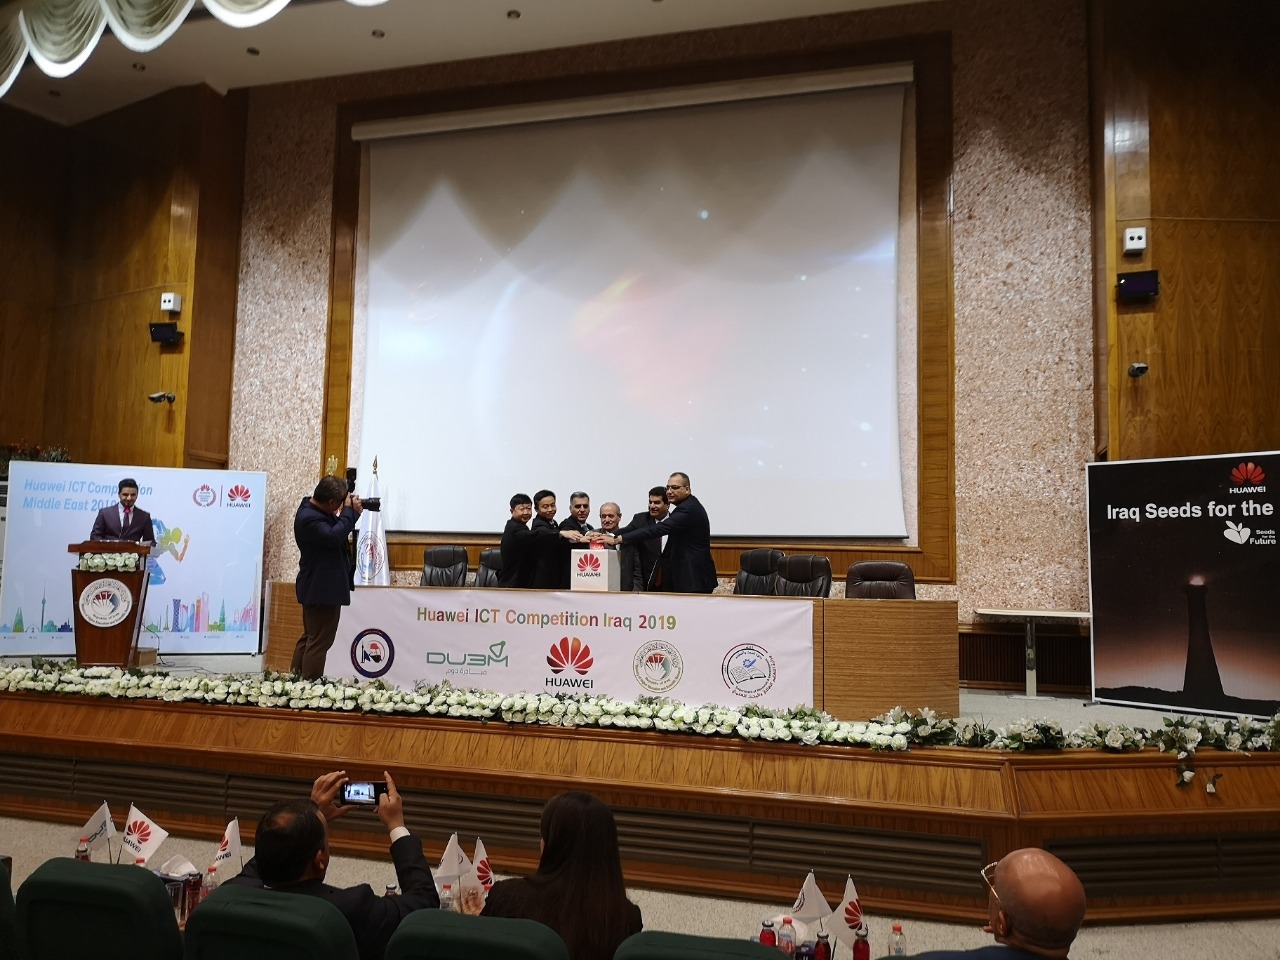 فريق مواهب عراقي يشارك بمسابقة هواوي لتقنية المعلومات والاتصالات في الصين